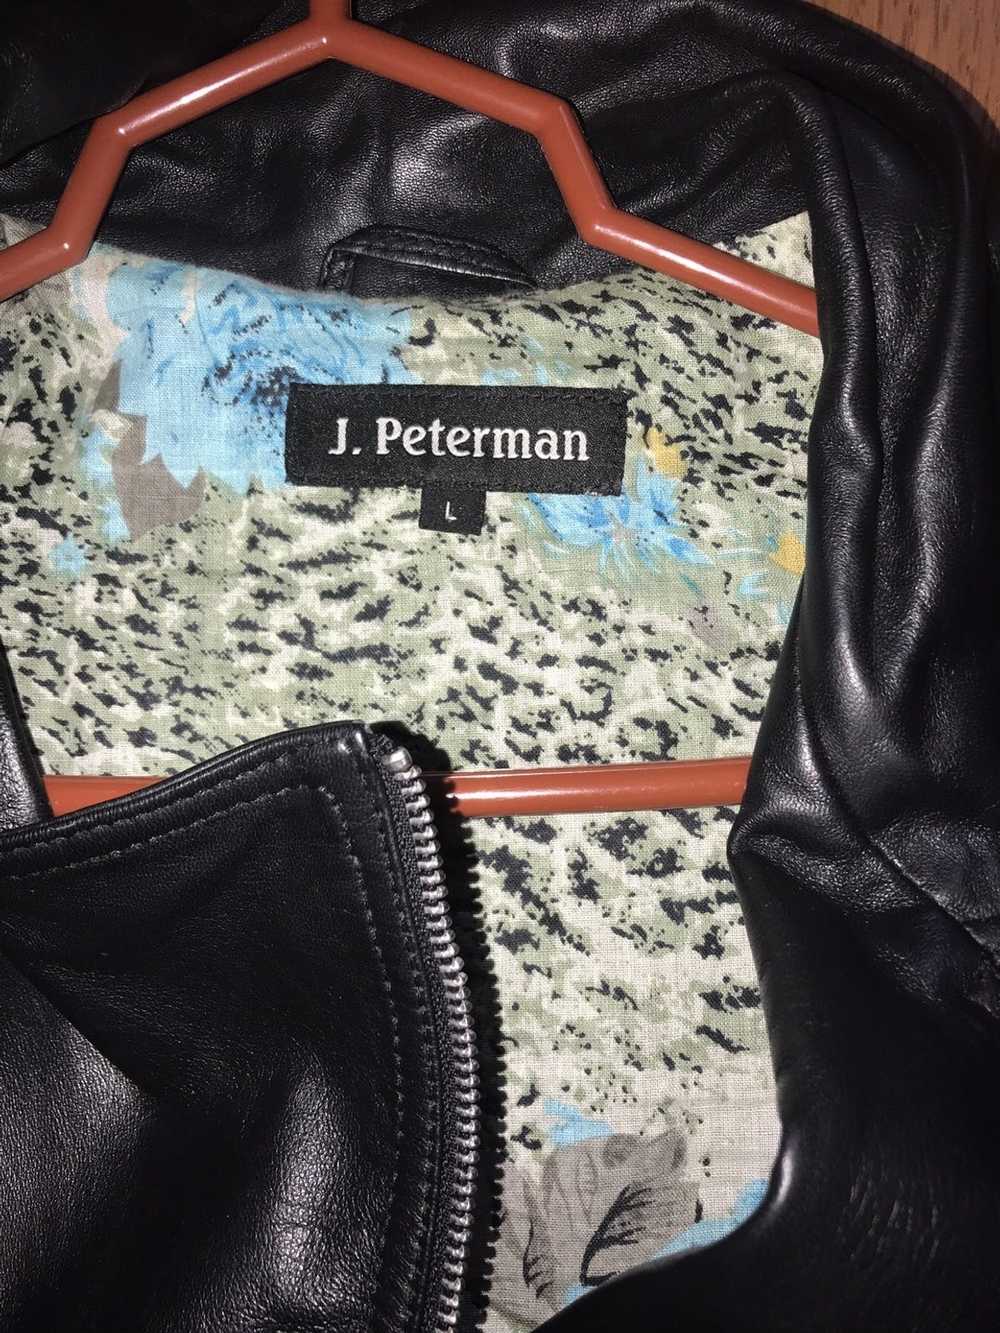 J Peterman J peterman leather jacket - image 2